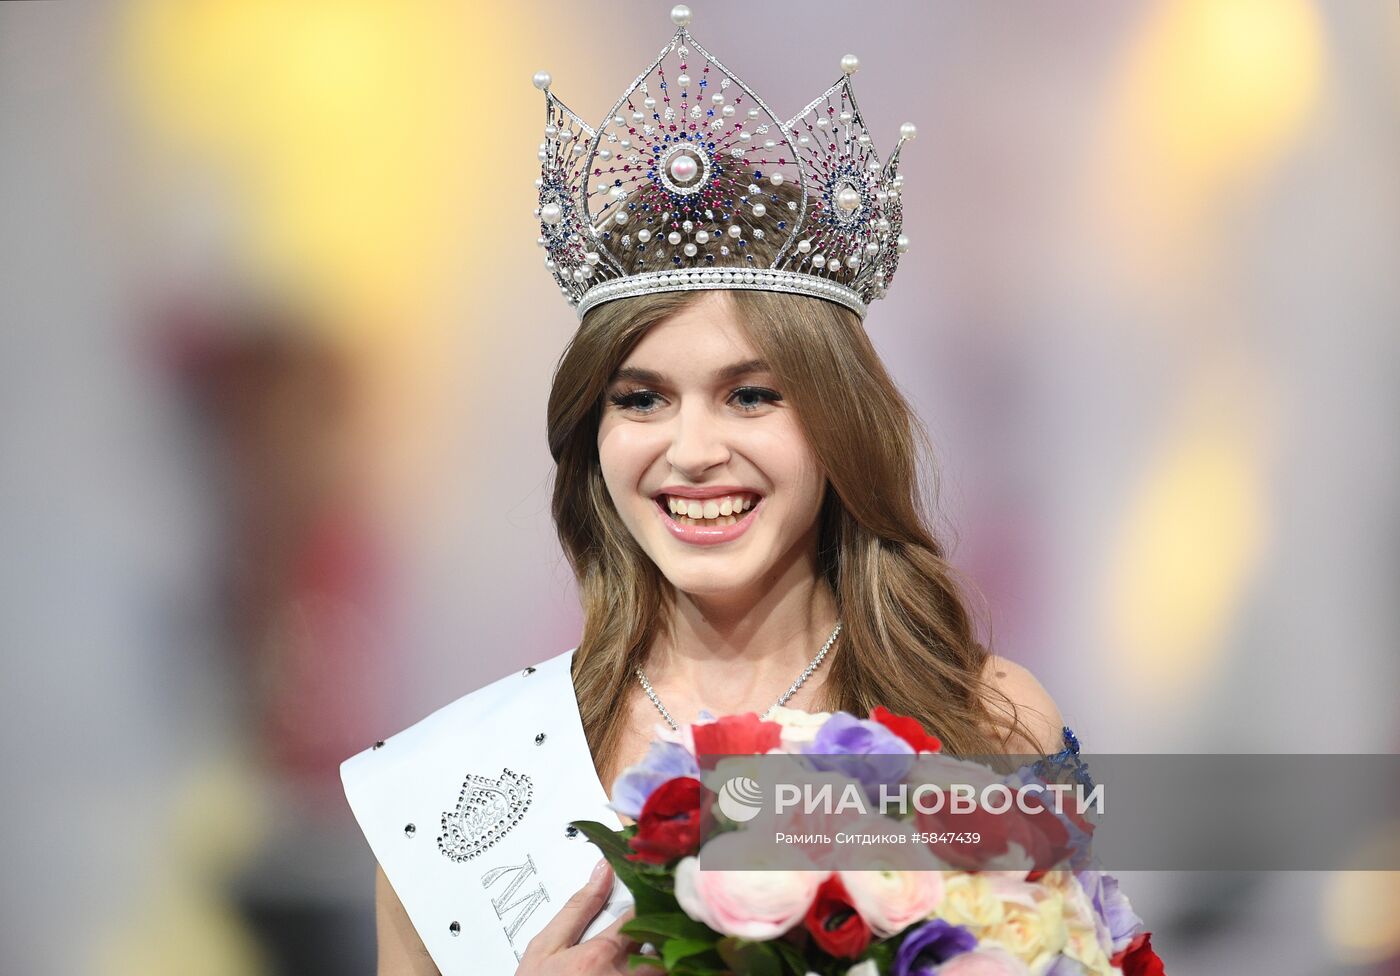 Финал конкурса "Мисс Россия 2019"